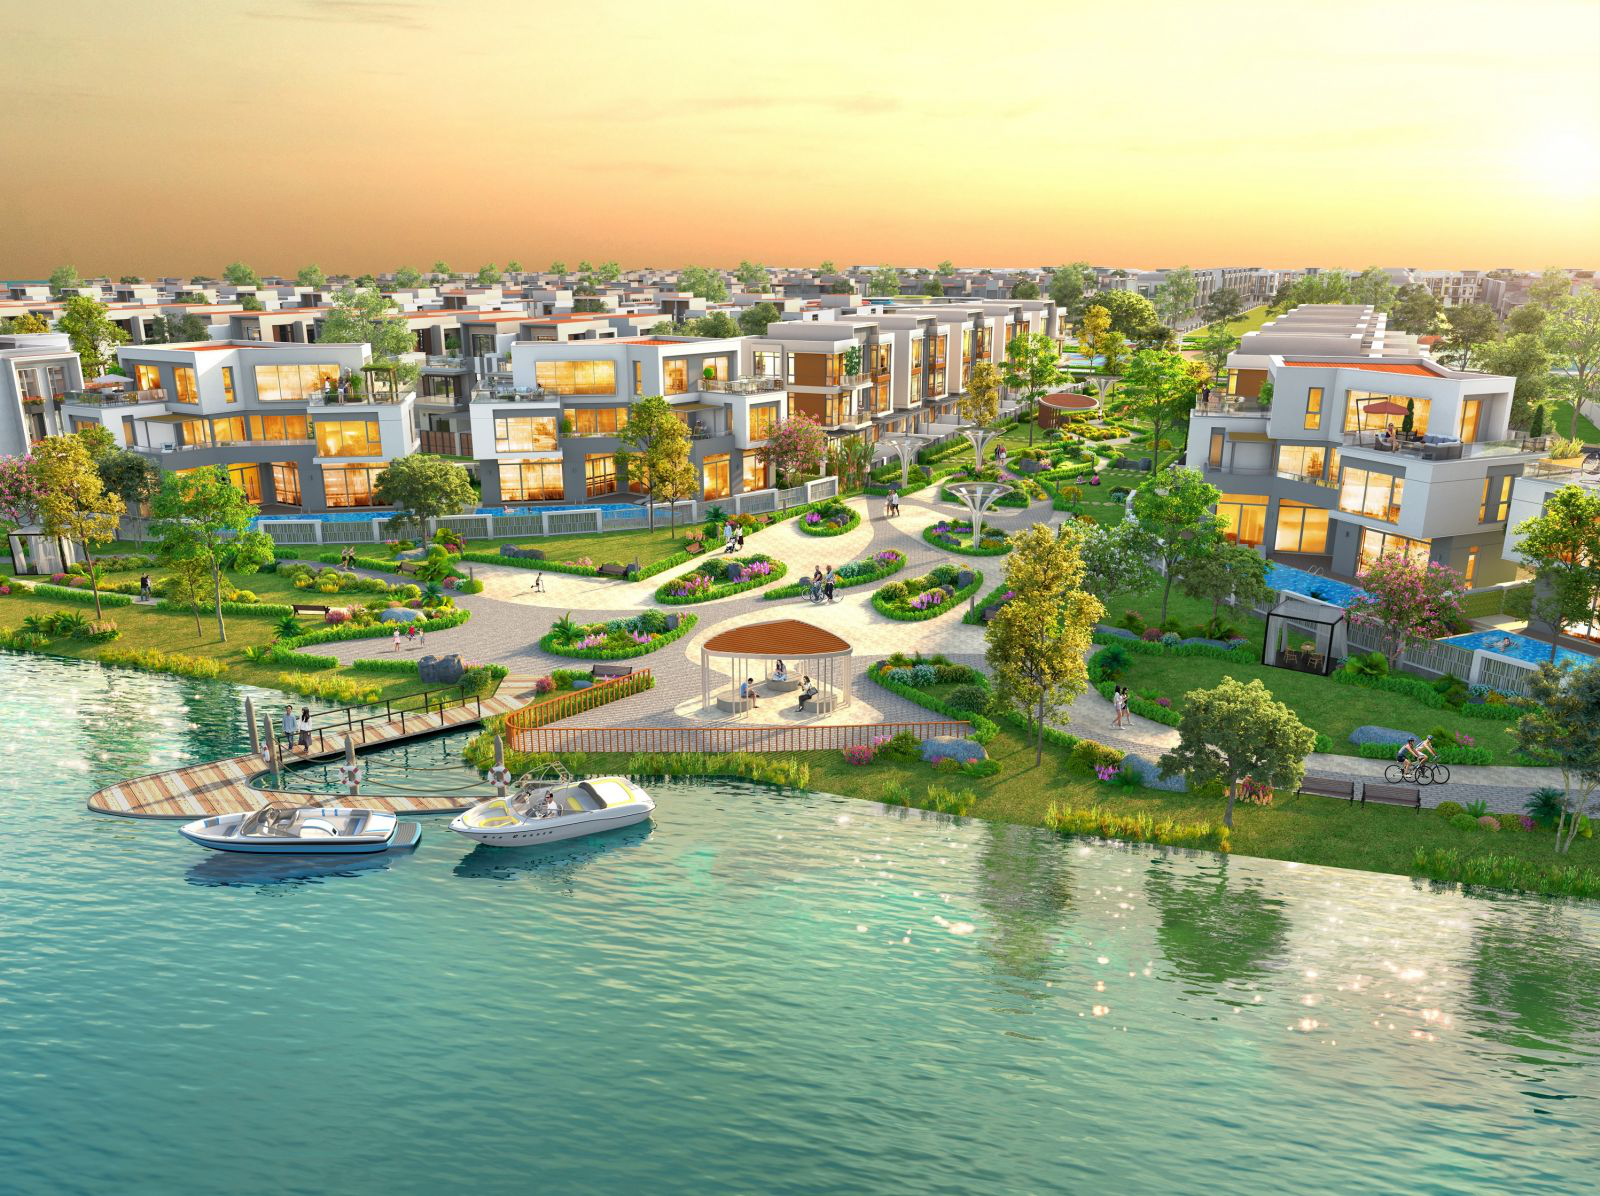 Tập đoàn Novaland dành tâm huyết phát triển Aqua City thành đô thị sinh thái, thông minh, tiện ích hoàn chỉnh, đáng sống bậc nhất phía đông Sài Gòn.